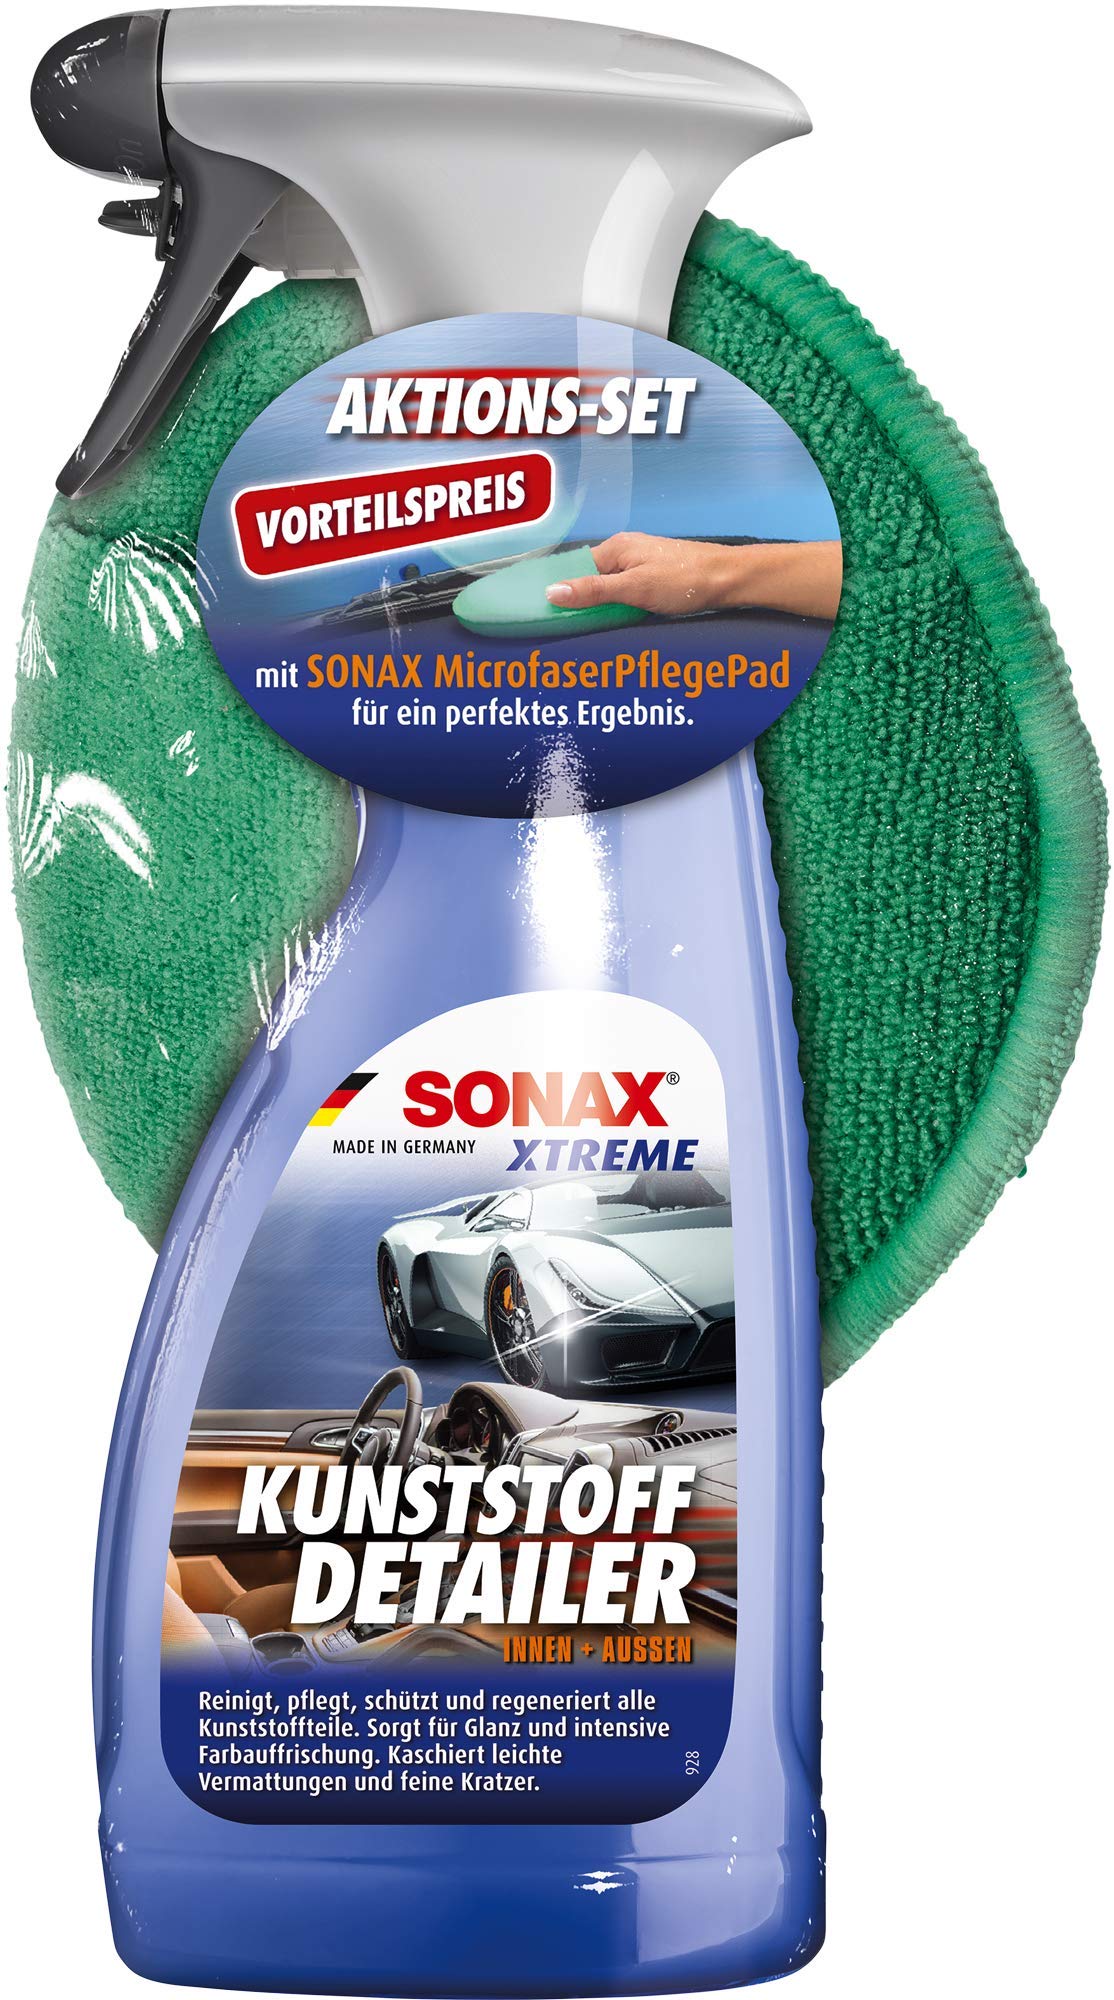 SONAX XTREME KunststoffDetailer Innen + Außen (500 ml) inkl. Microfaserpad - Kunststoffpflege-Set für das gesamte Fahrzeug | Art-Nr. 02558410 von SONAX